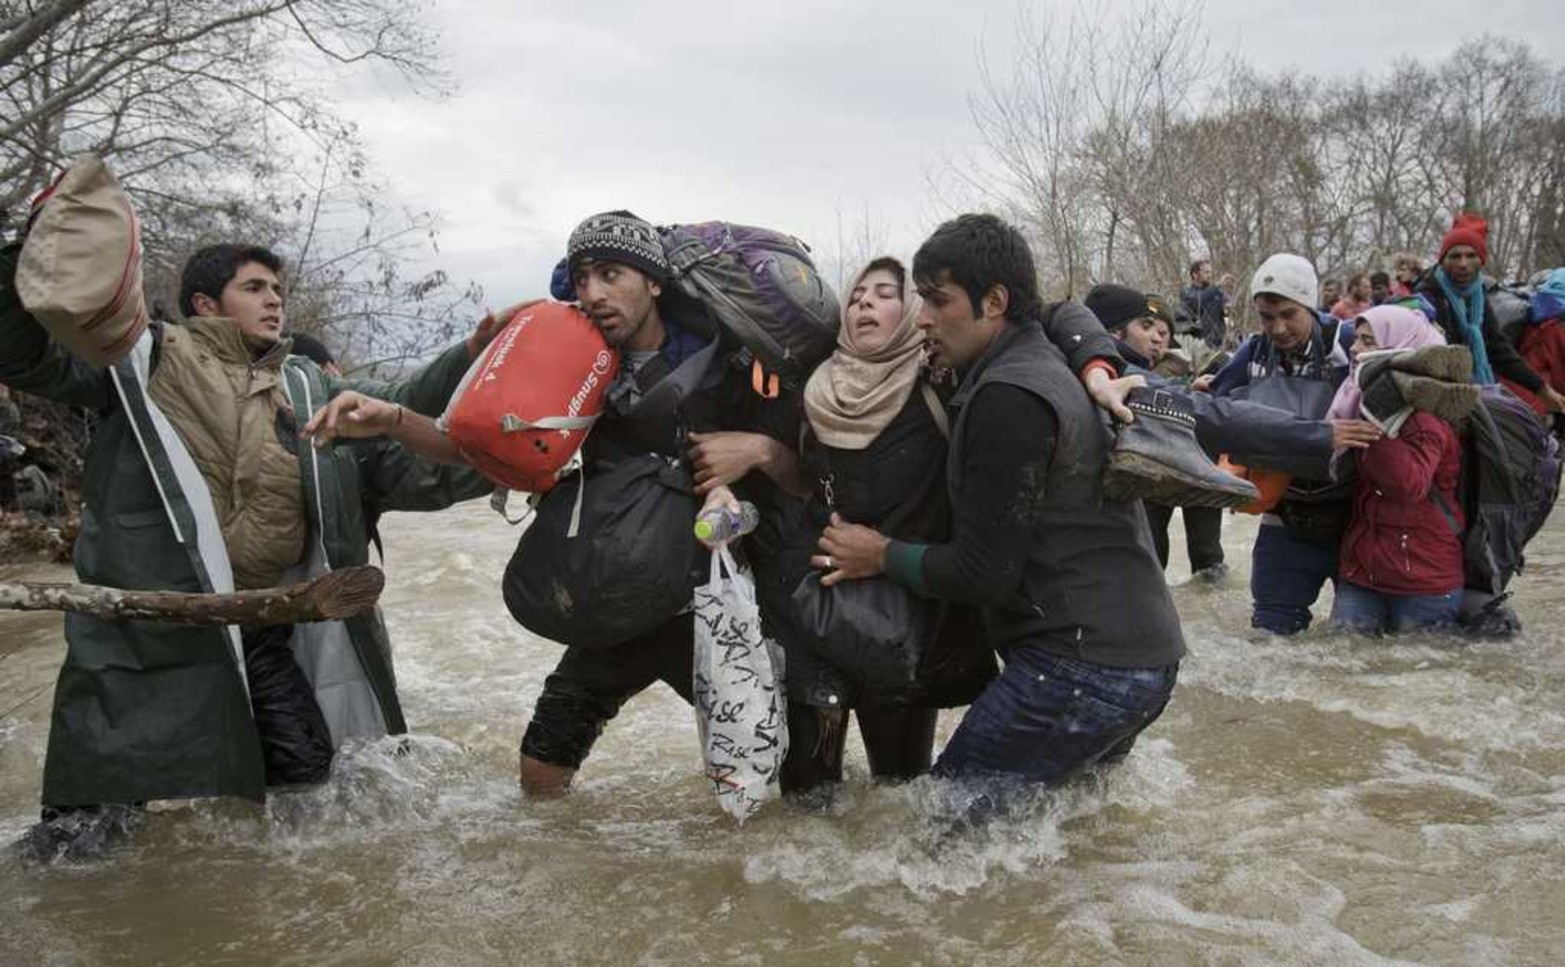 Migrantes que intentan llegar a Macedonia el 14/03/2017 son fotografiados por Vadim Ghirda para AP. Ghrida obtuvo por esta imagen el segundo premio en el área de Contemporáneos del World Press Photo.